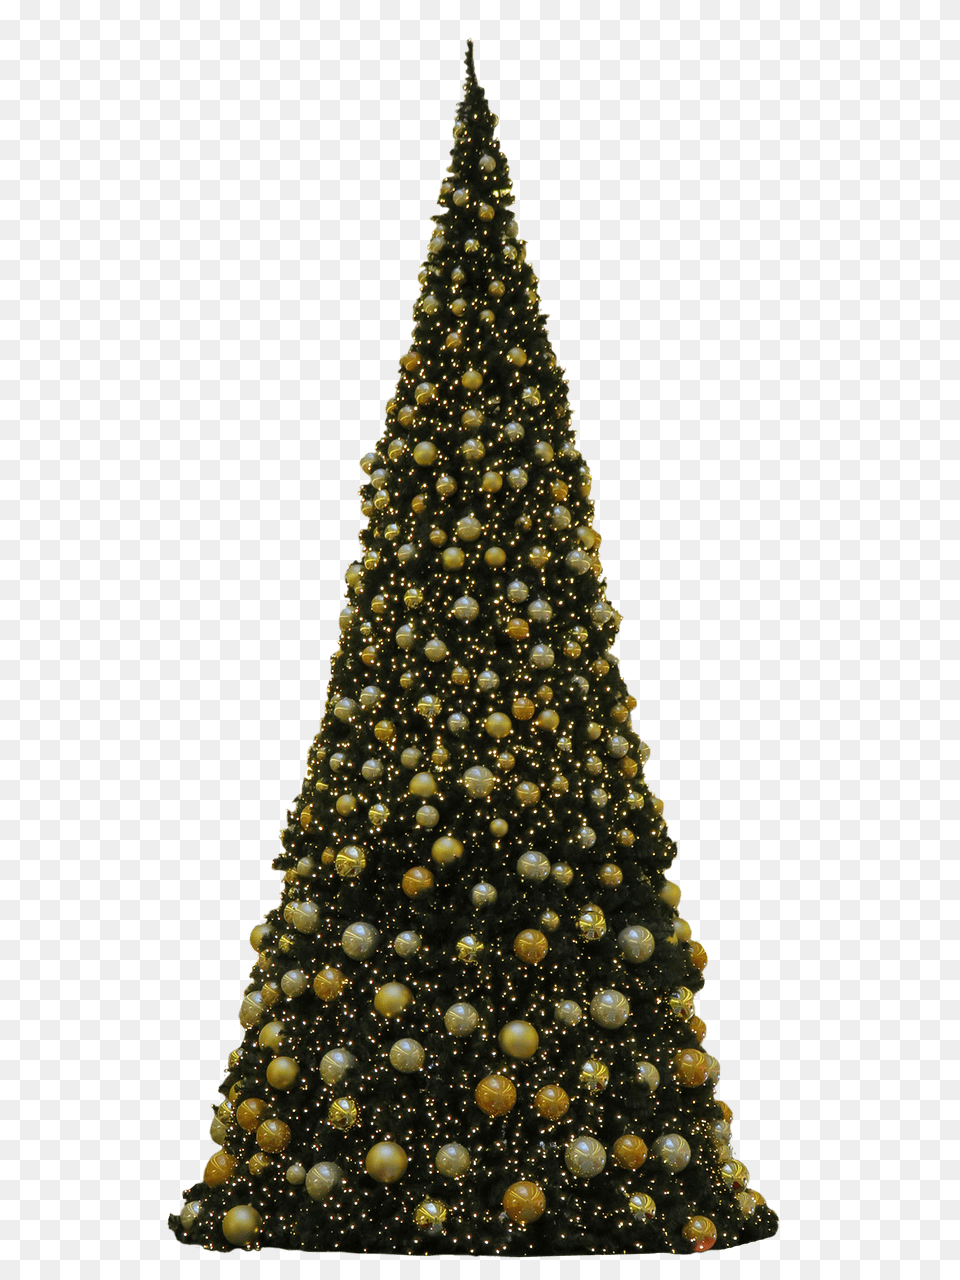 De Navidad Tres Bolas Doradas Transparente, Christmas, Christmas Decorations, Festival, Plant Free Transparent Png